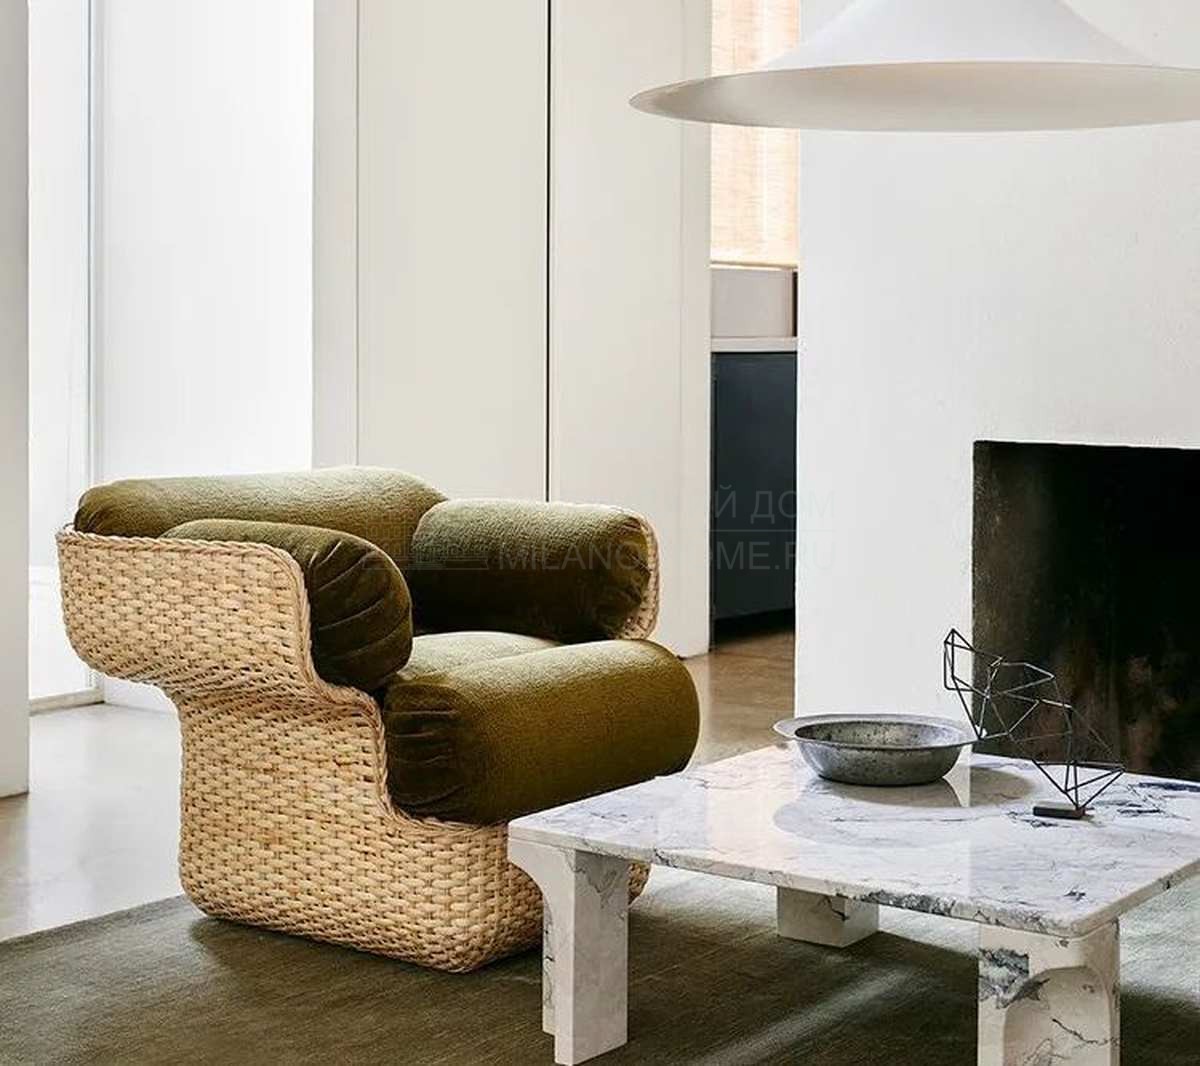 Лаунж кресло Basket lounge chair из Дании фабрики GUBI